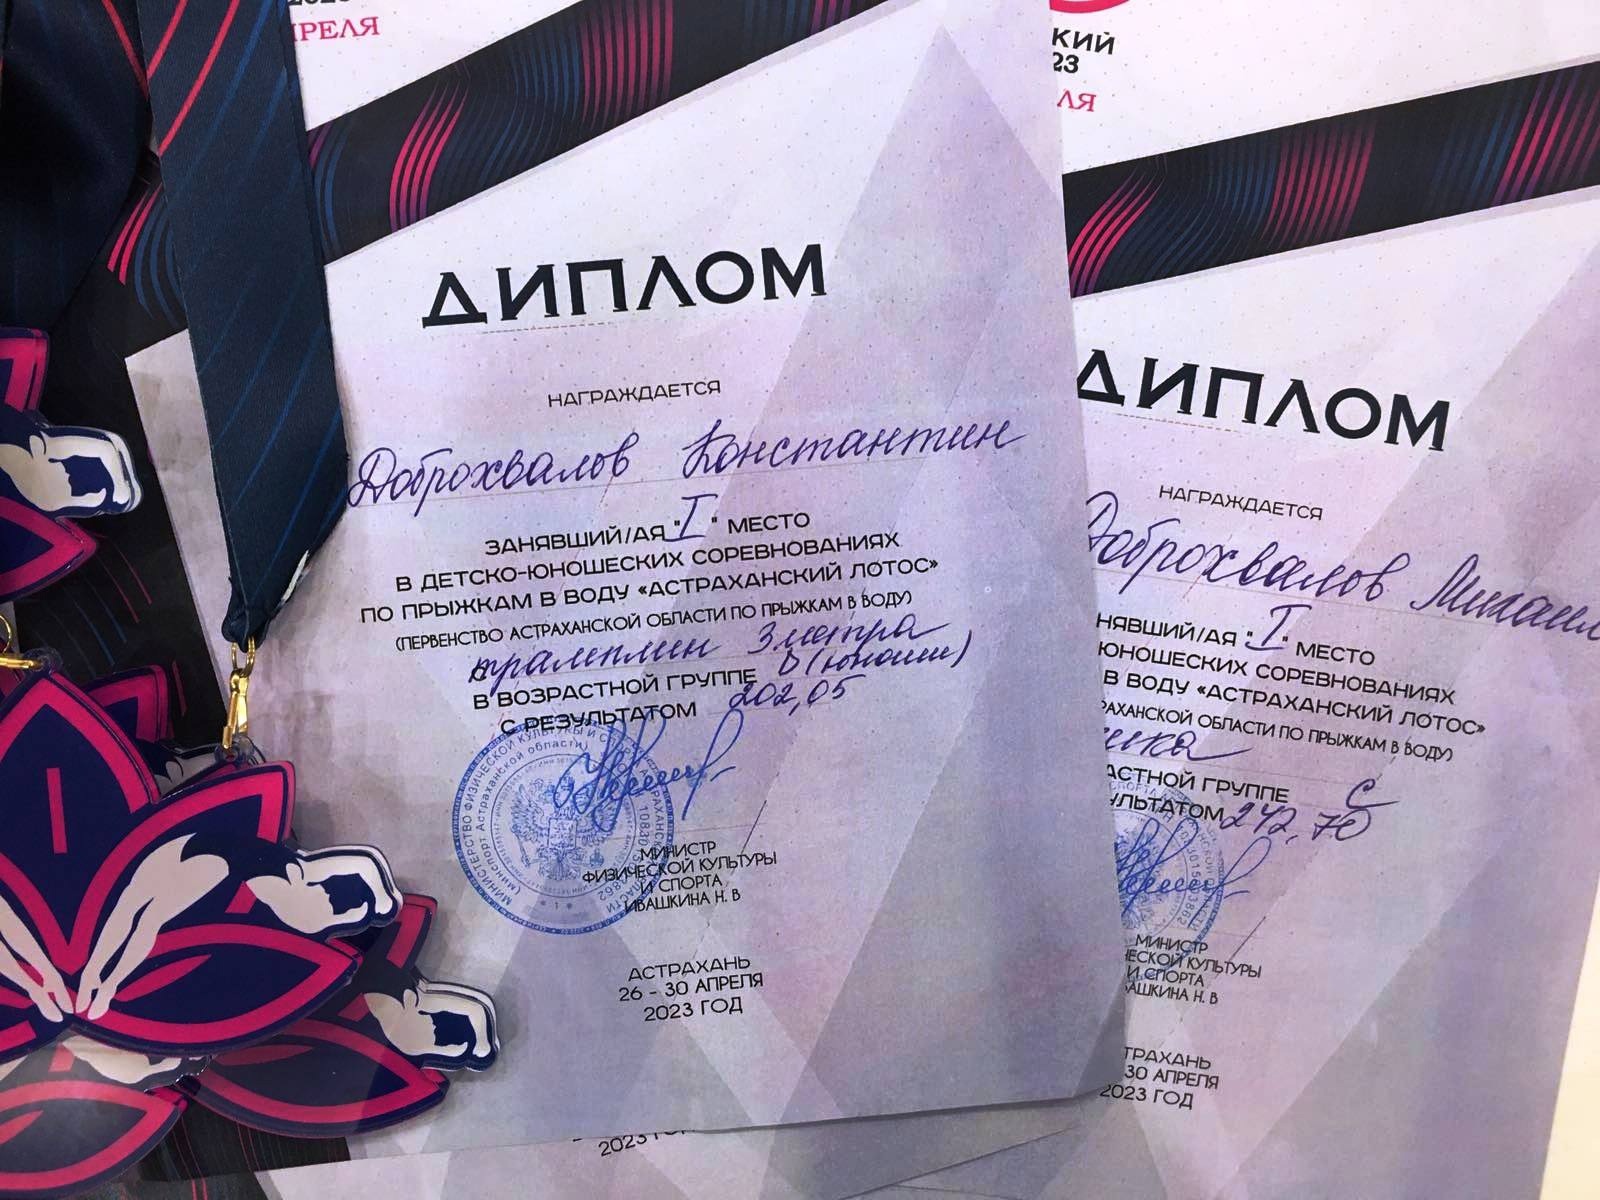 Ученики лицея заняли призовые места на первенстве Астраханской области «Астраханский лотос».